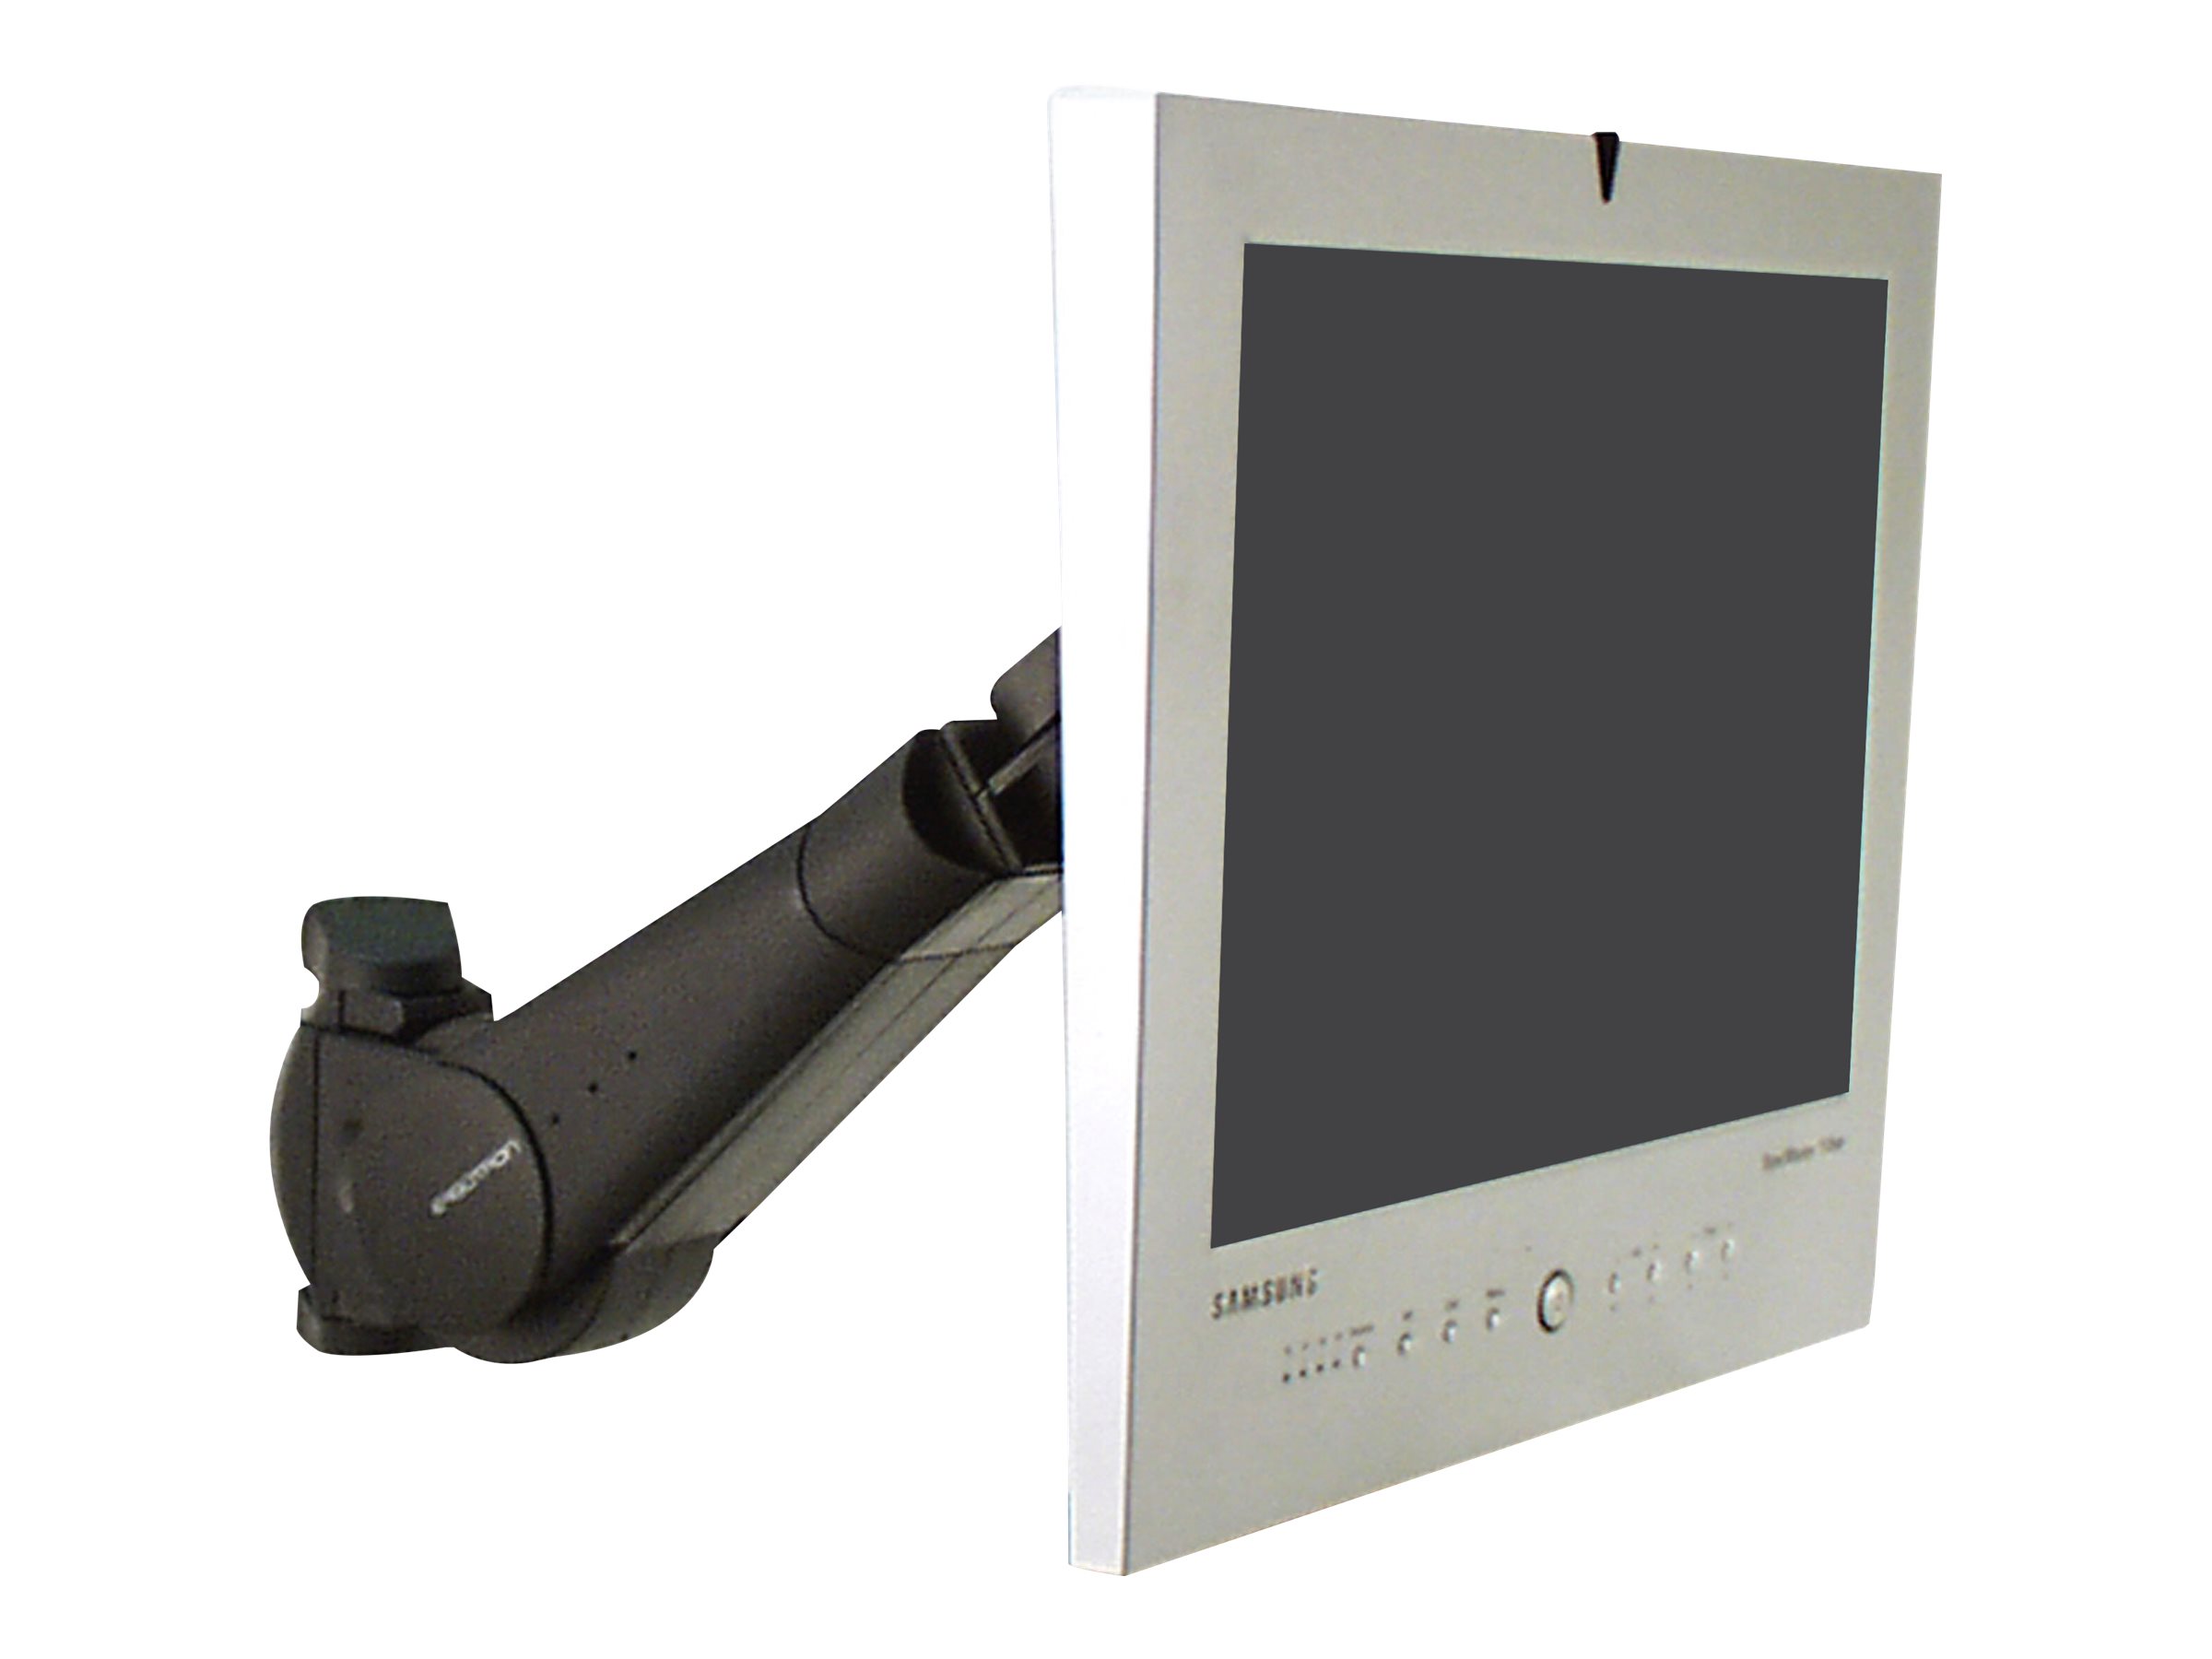 Ergotron 400 Series - Kit de montage (bras pour moniteur) - pour moniteur - noir - Taille d'écran : jusqu'à 24 pouces - montable sur mur - 45-007-085 - Accessoires pour écran